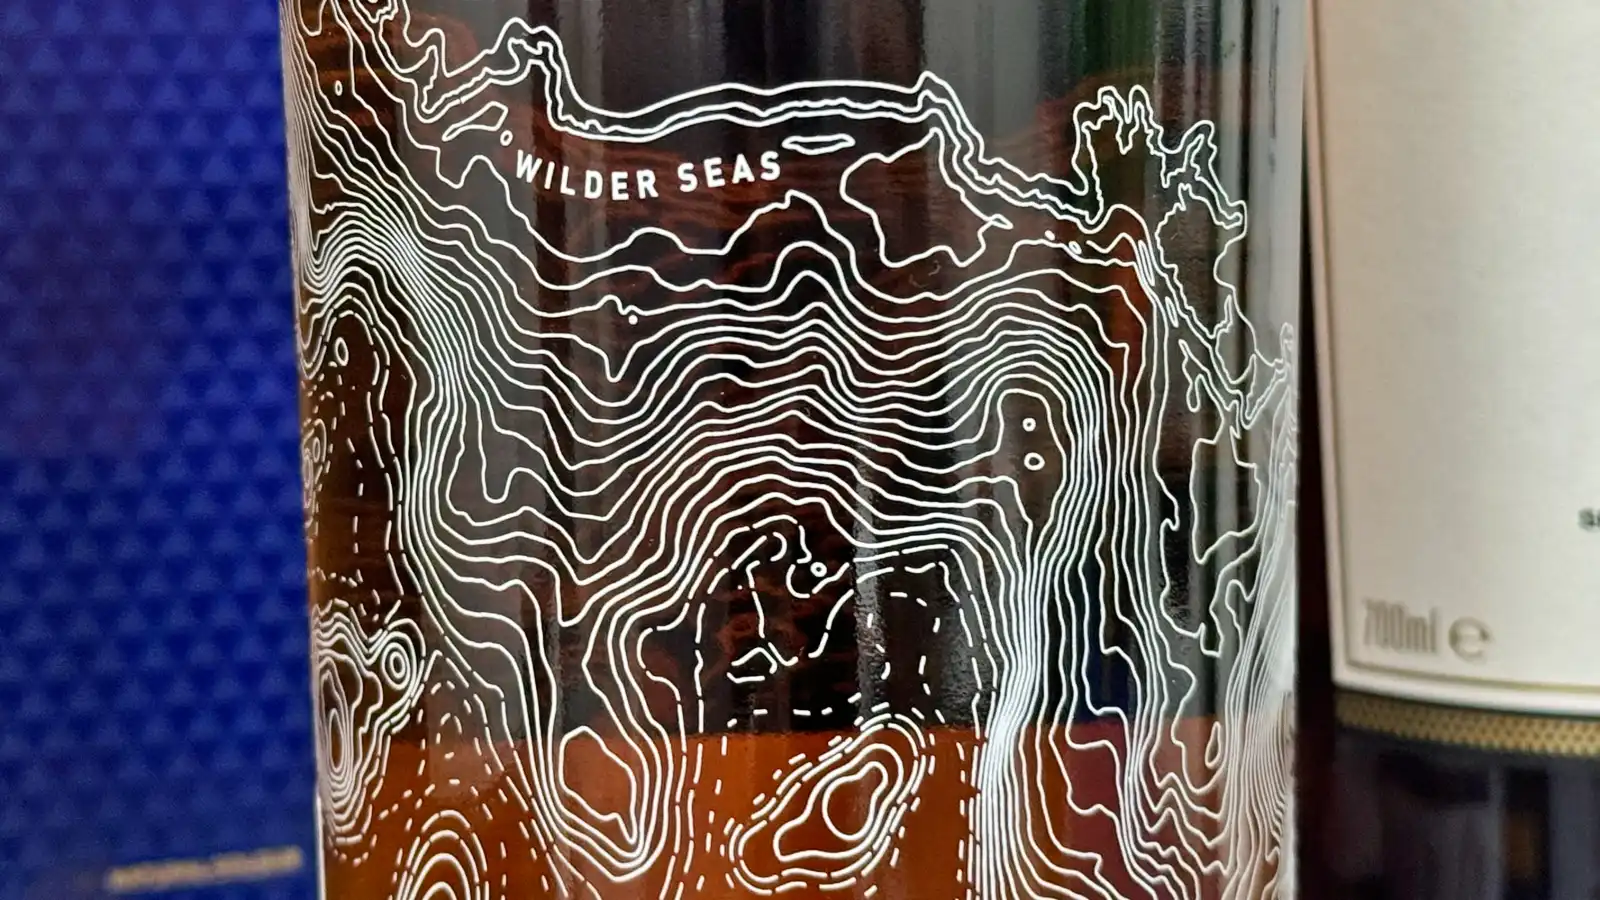 탈리스커 와일더 씨 팔리 에디션 유리병 겉면에 그려진 해안선 문양이 보이는 사진